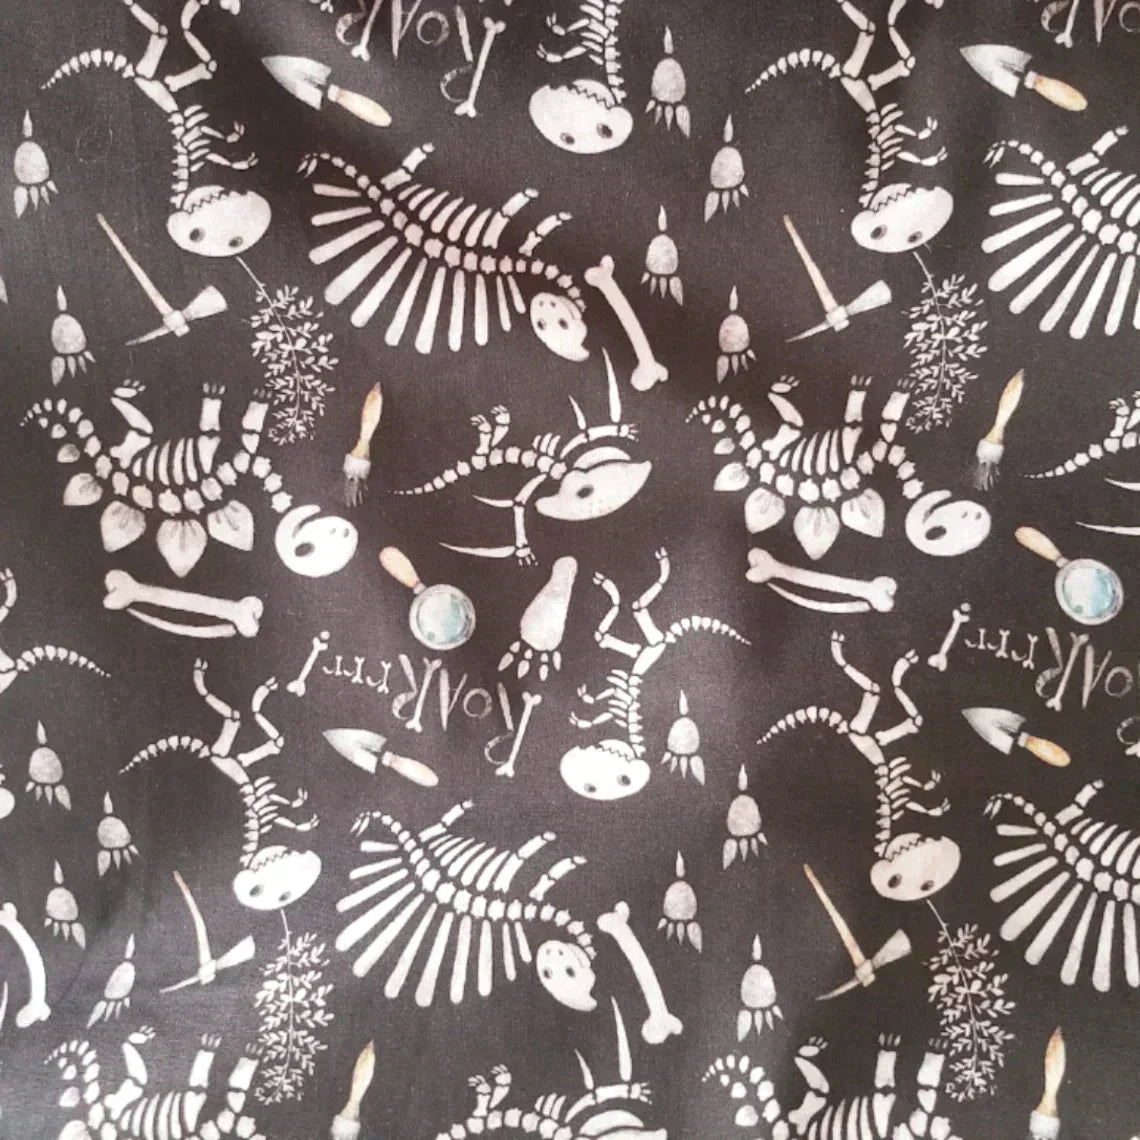 Dinosaur Fabric, Skeleton Fabric, ZoZo Designs